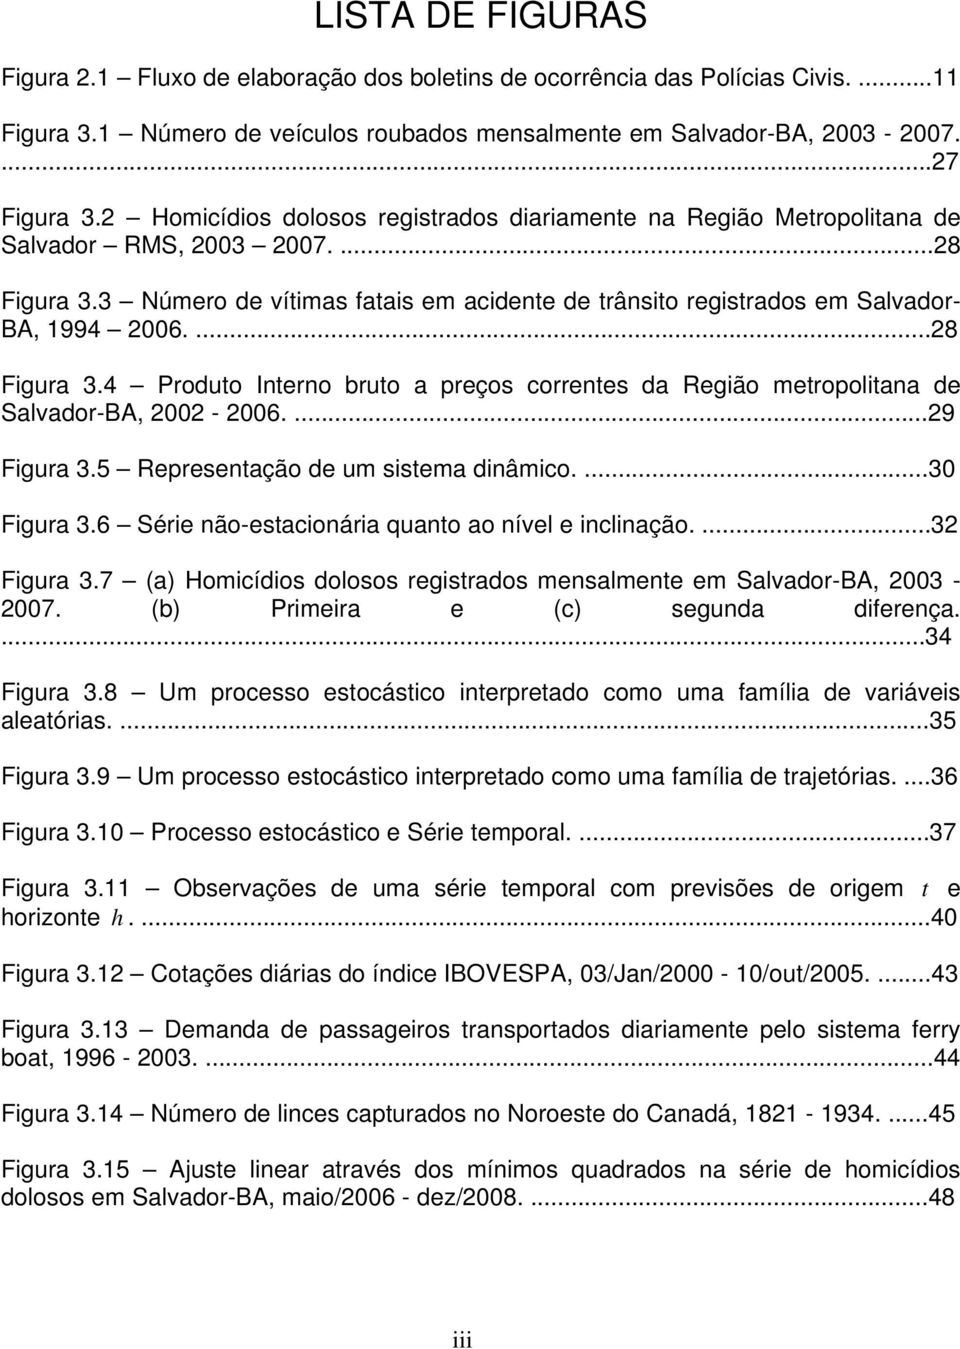 ...28 Figura 3.4 Produo Inerno bruo a preços correnes da Região meropoliana de Salvador-BA, 2002-2006....29 Figura 3.5 Represenação de um sisema dinâmico....30 Figura 3.